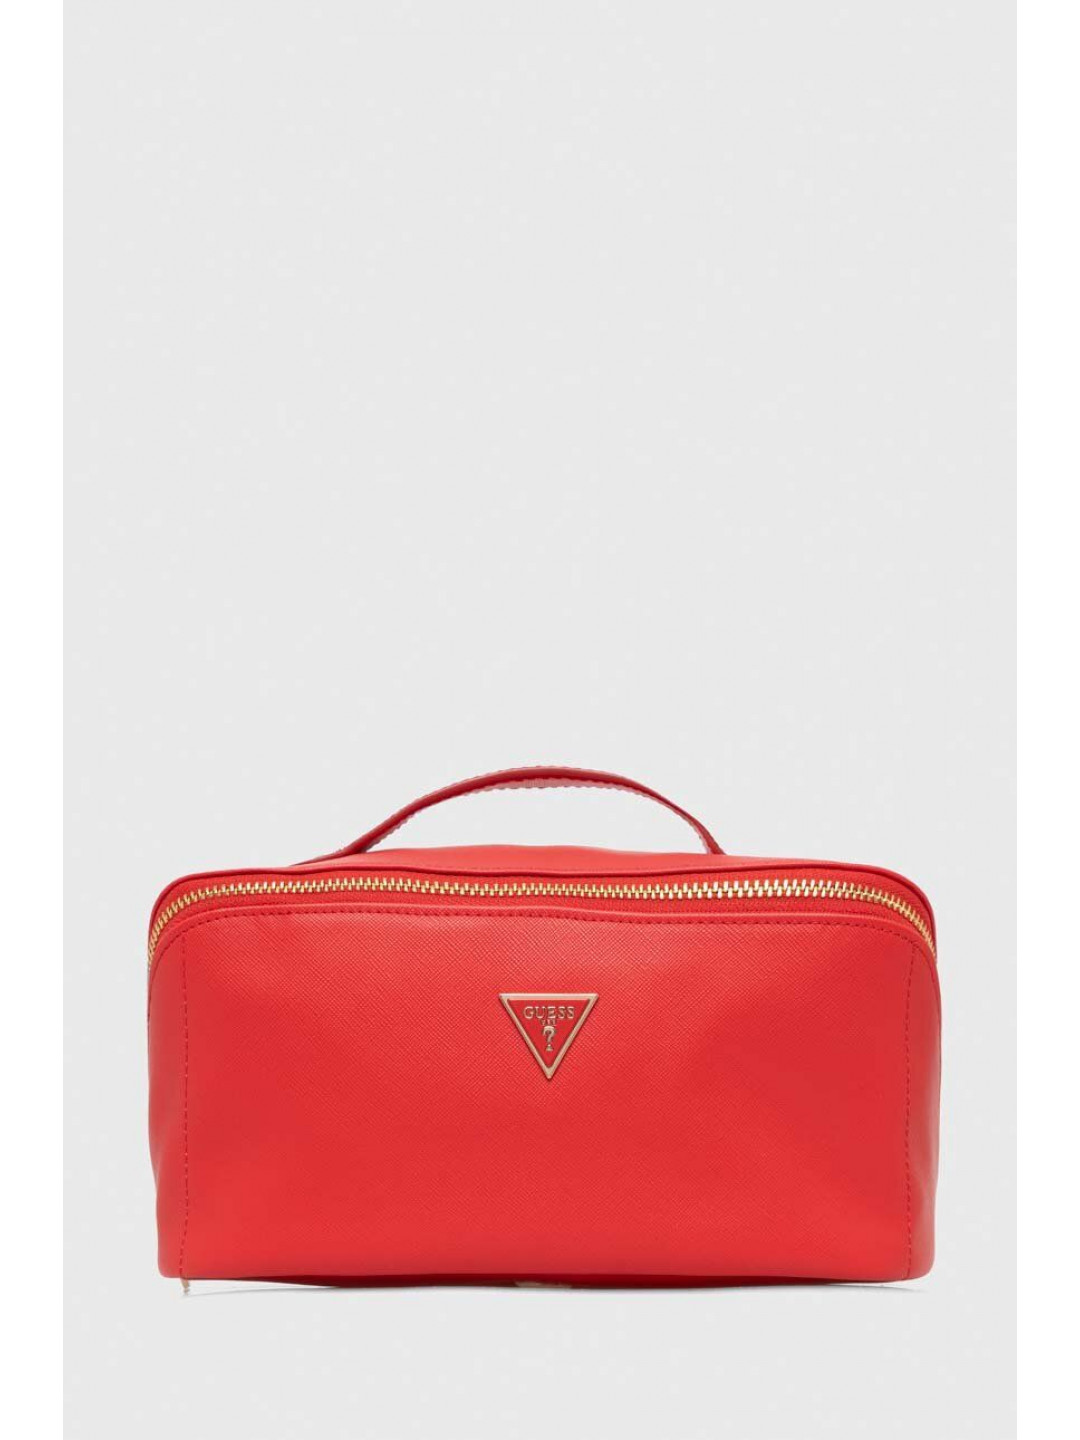 Kosmetická taška Guess červená barva PW1604 P3401